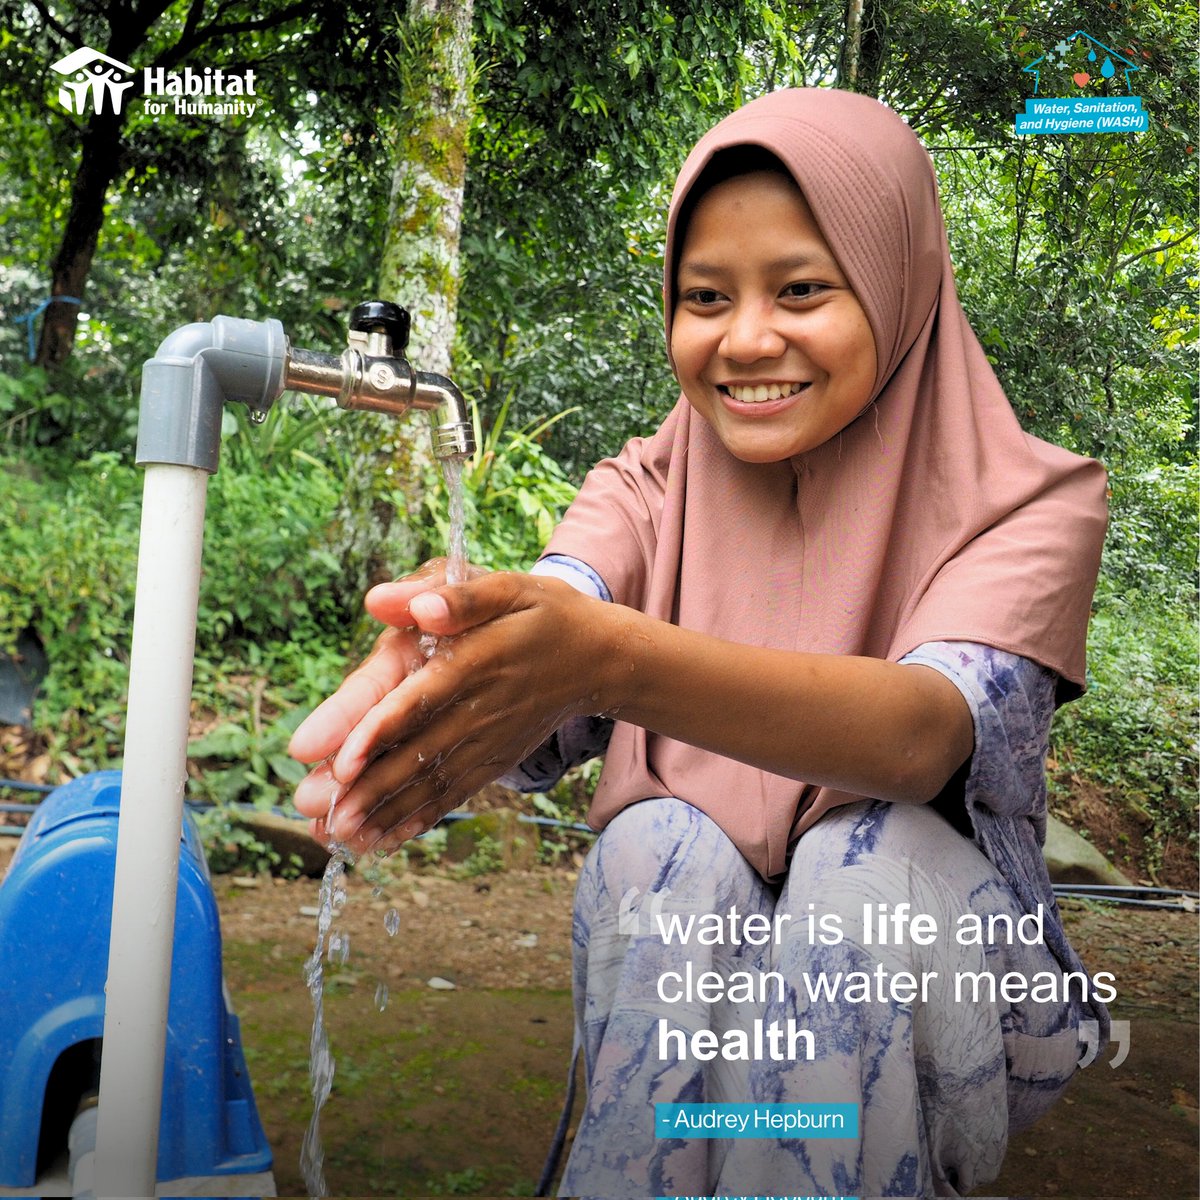 Habitat Indonesia bertekad untuk memberikan akses terhadap air bersih bagi masyarakat yang membutuhkan. 

Dukungan #SahabatHabitat sangat penting untuk menjaga program ini berkelanjutan dan mendukung pencapaian SDGs Goal 6. 

#Water #WaterforPeace #HabitatforHumanity